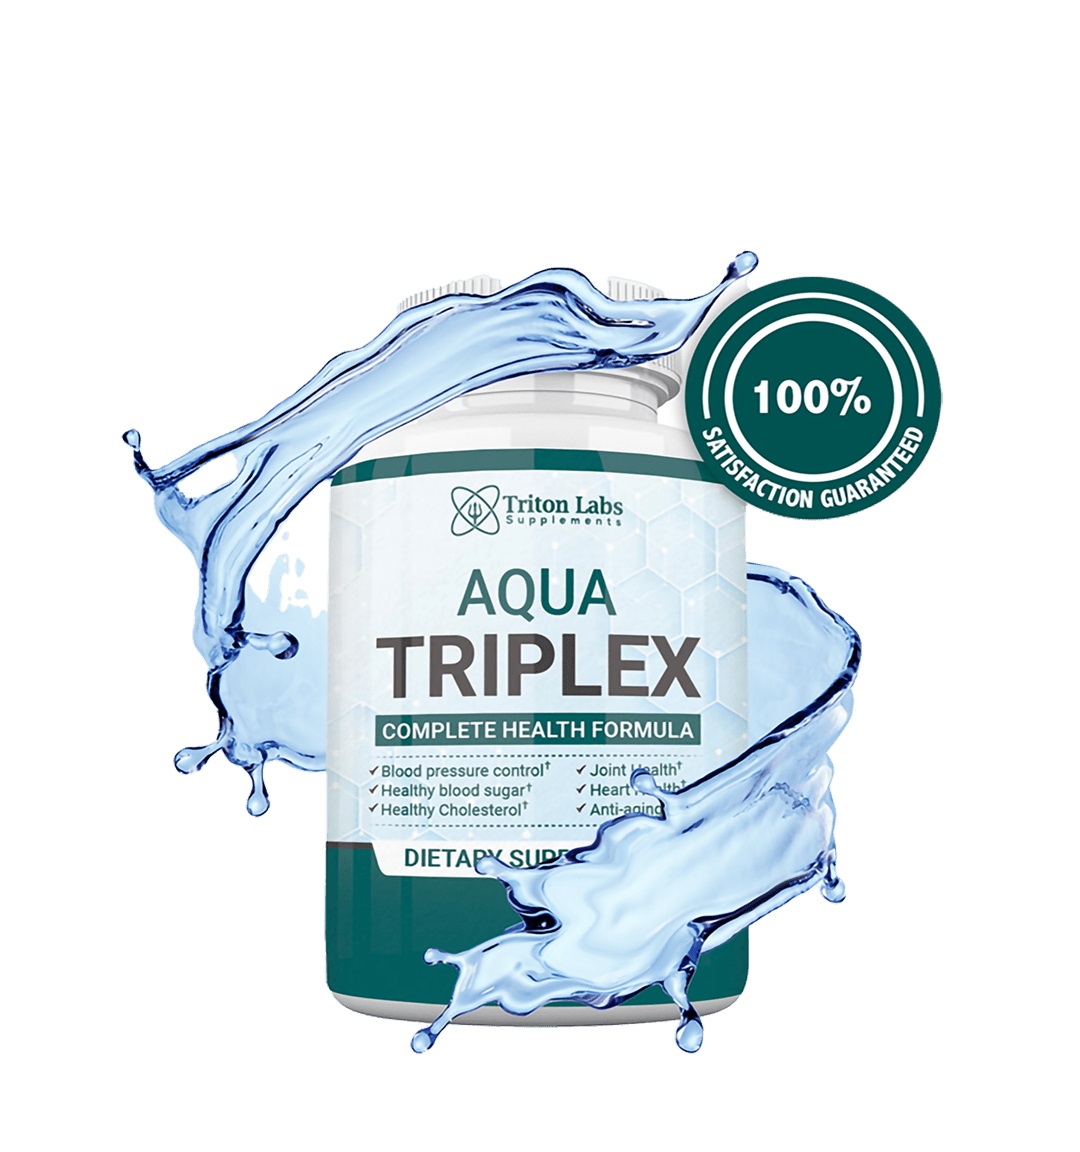 Aqua Triplex